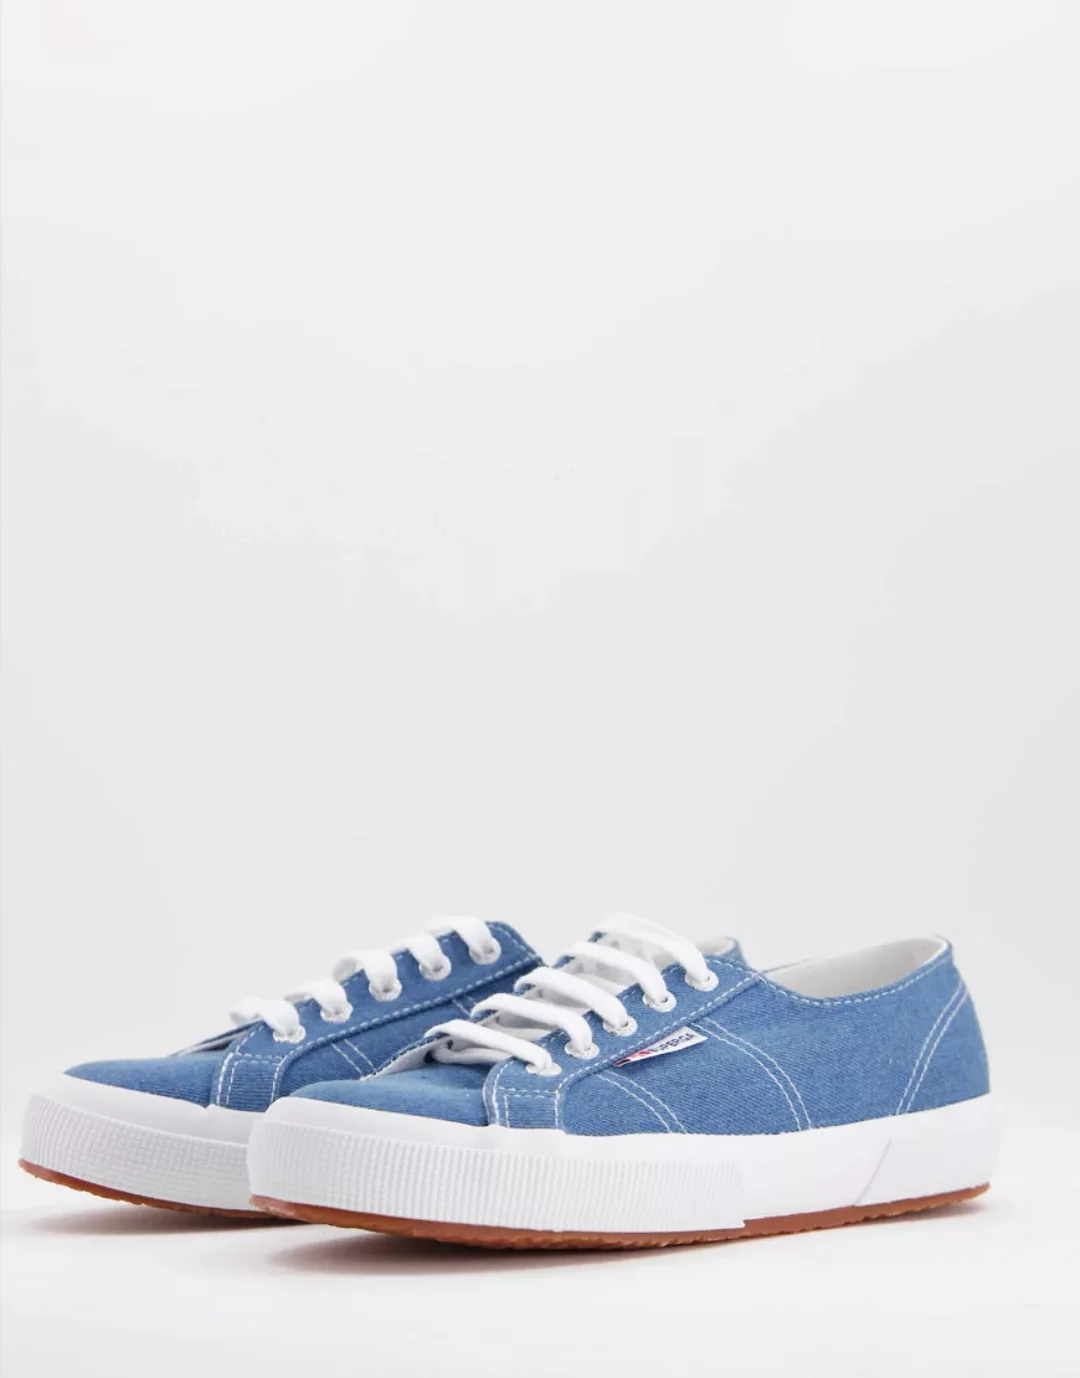 Superga – 2750 Cotu – Klassische Sneaker aus Denim-Blau günstig online kaufen